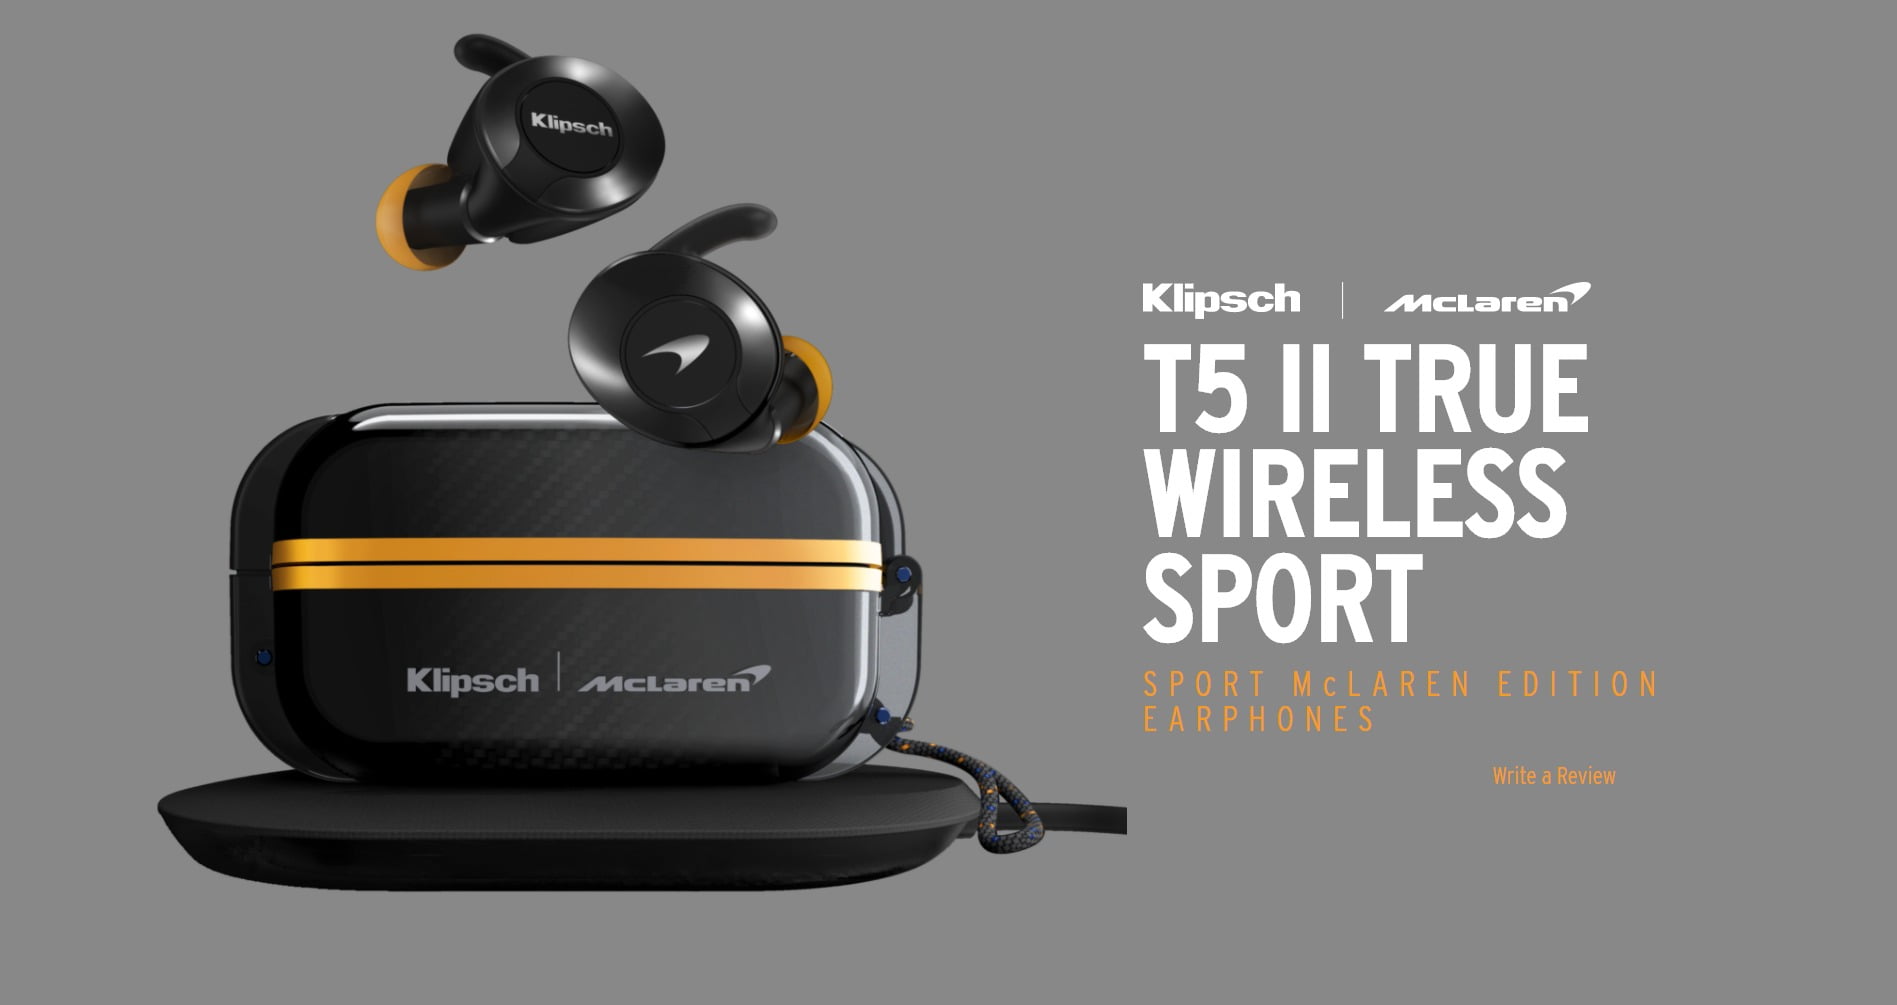 T5-II-True-Wireless-Sport-McLaren-Earphones-Klipsch-description6.jpg